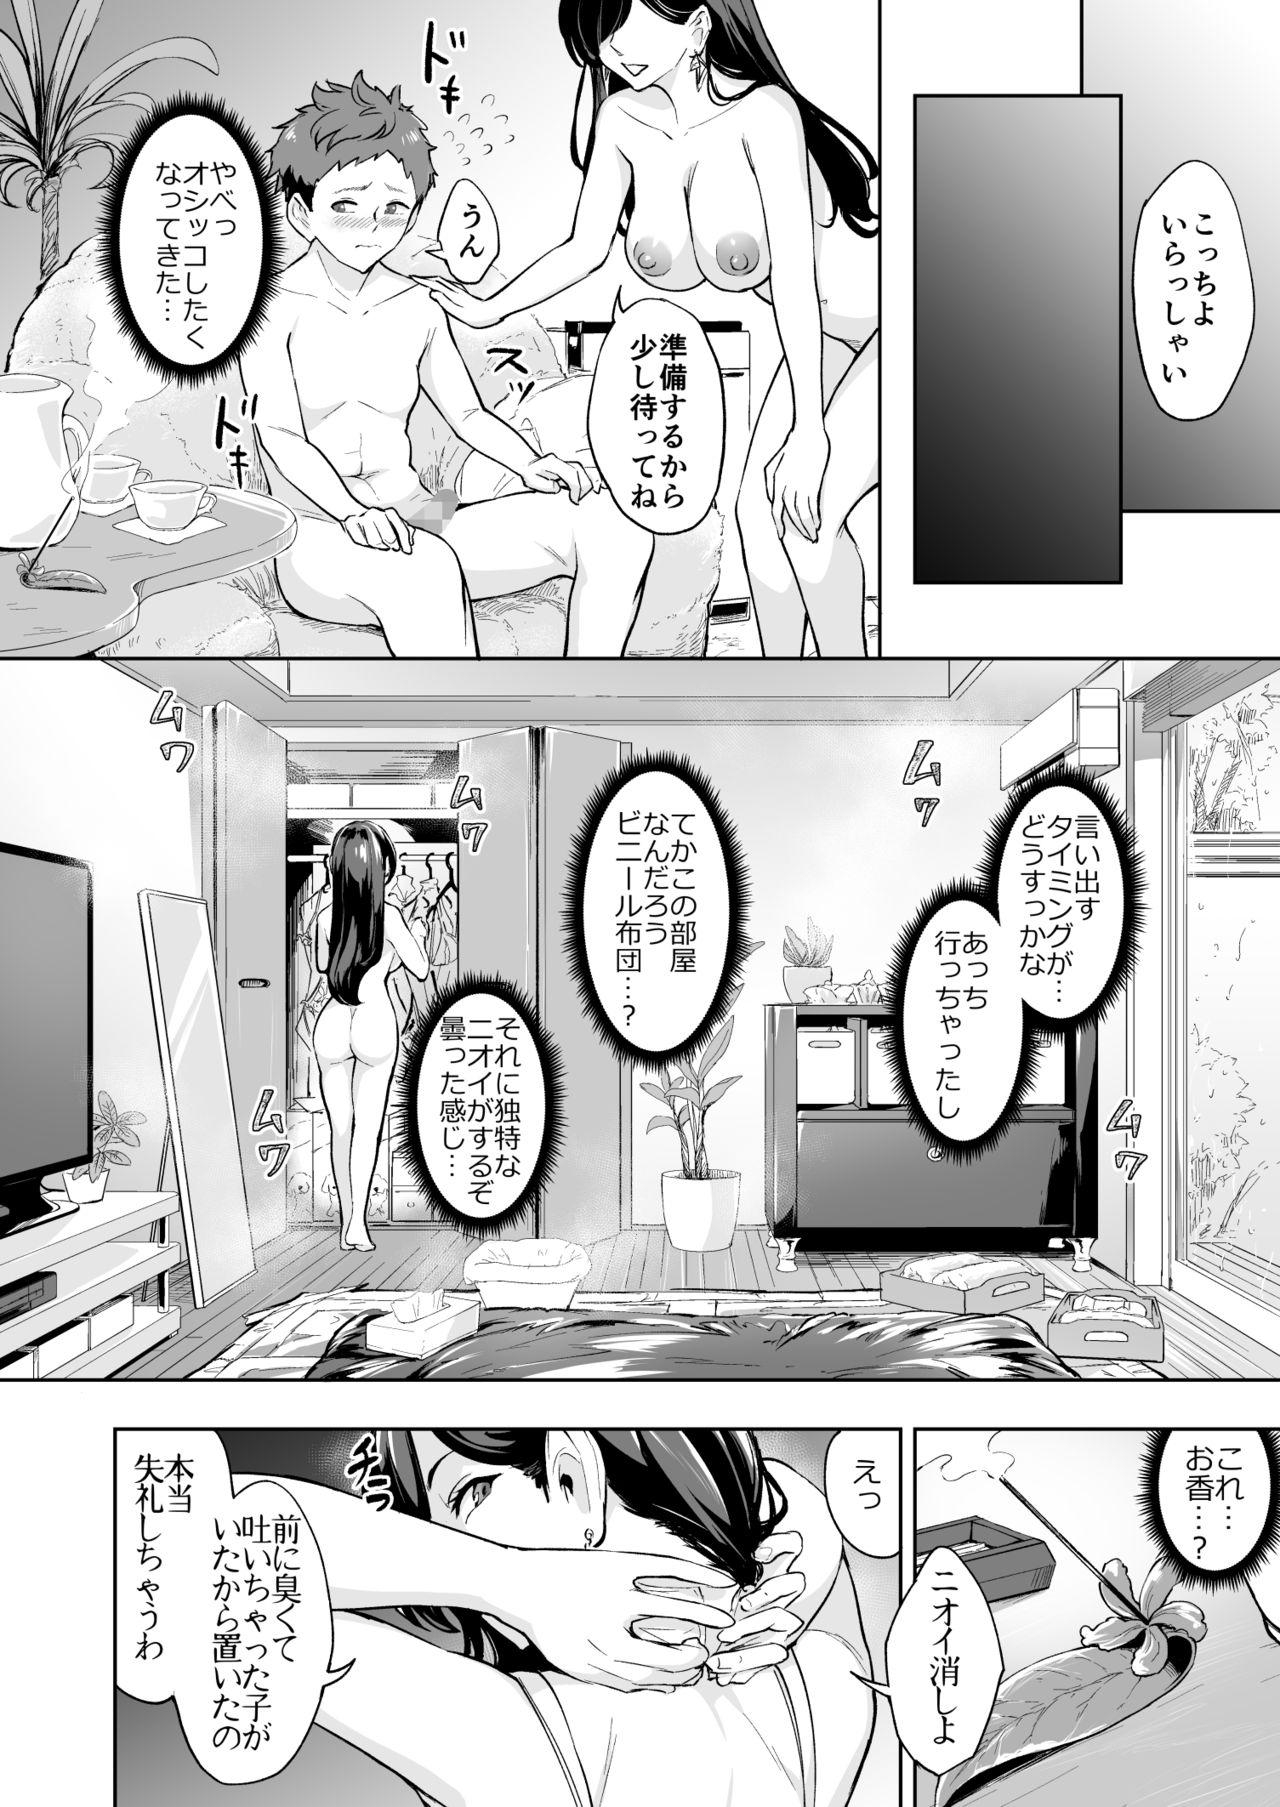 Boobs Arawareta Chijo wa Toshishita Gui no Scatolo Hentai deshita 3 - Original Sexo Anal - Page 8